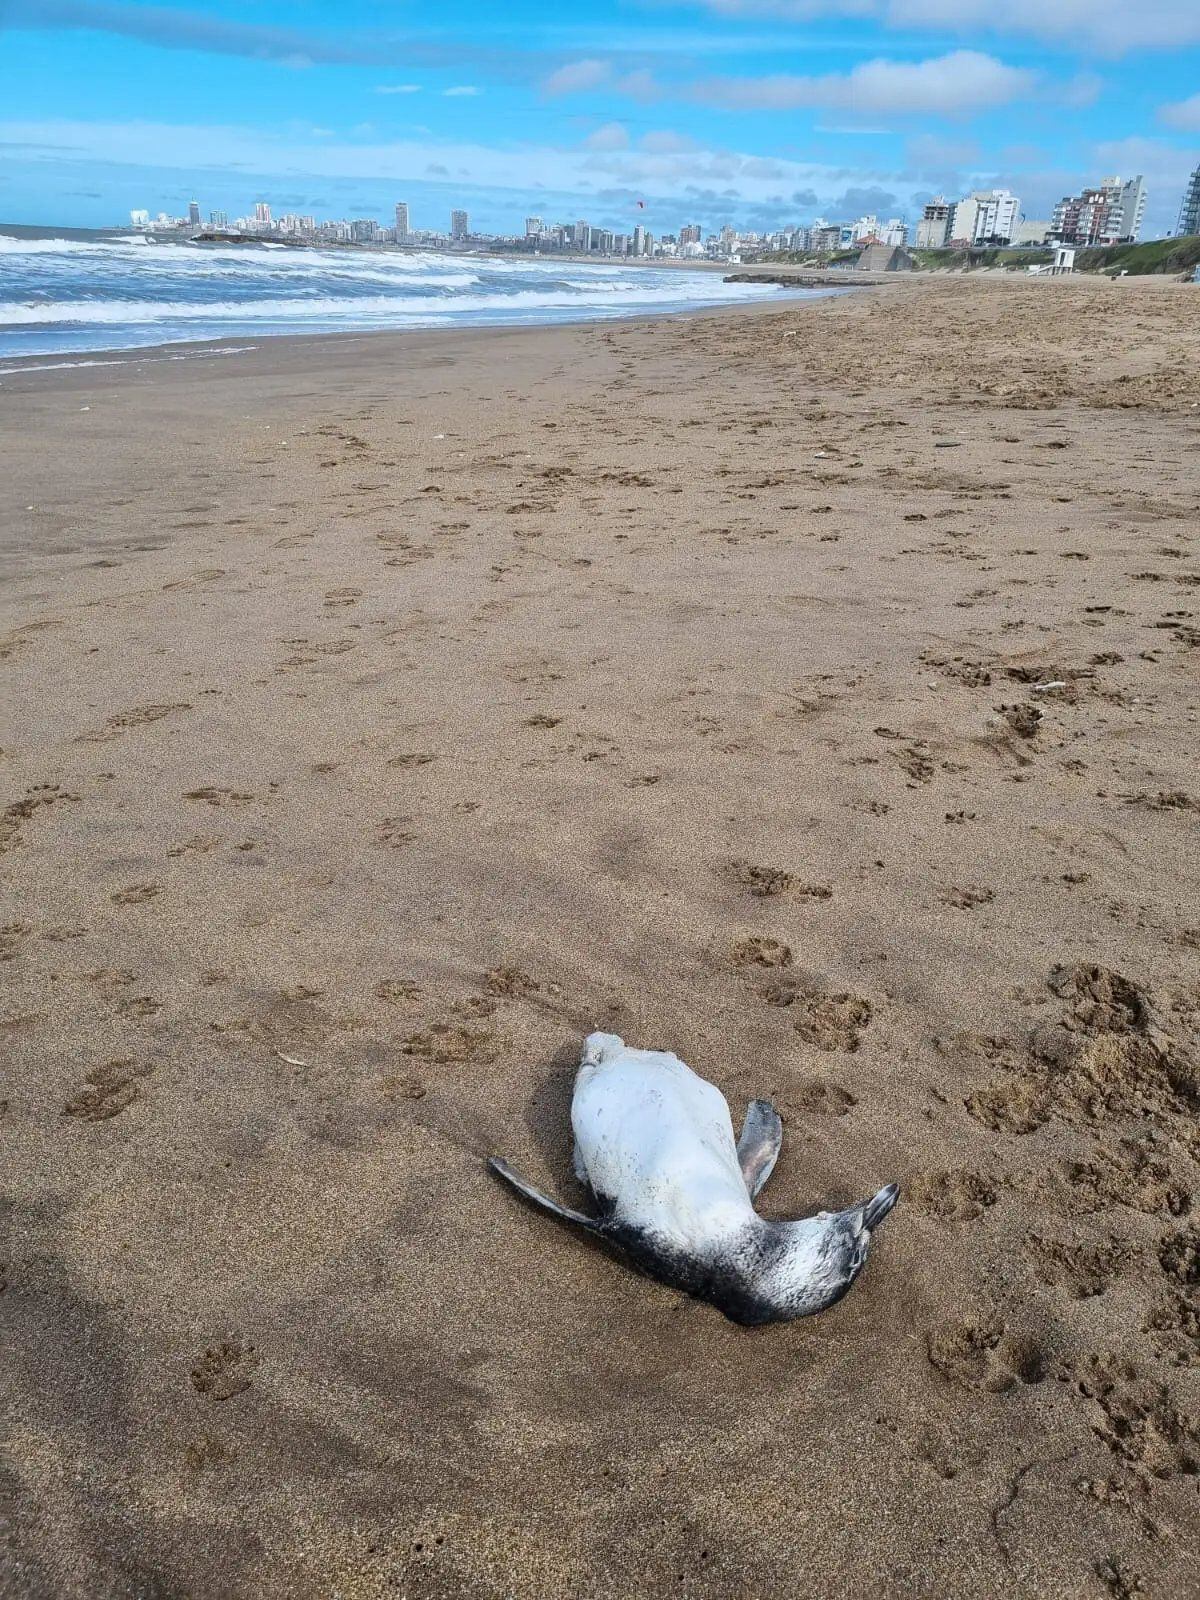 Preocupación en Mar del Plata: encontraron al menos 40 pingüinos muertos en la playa